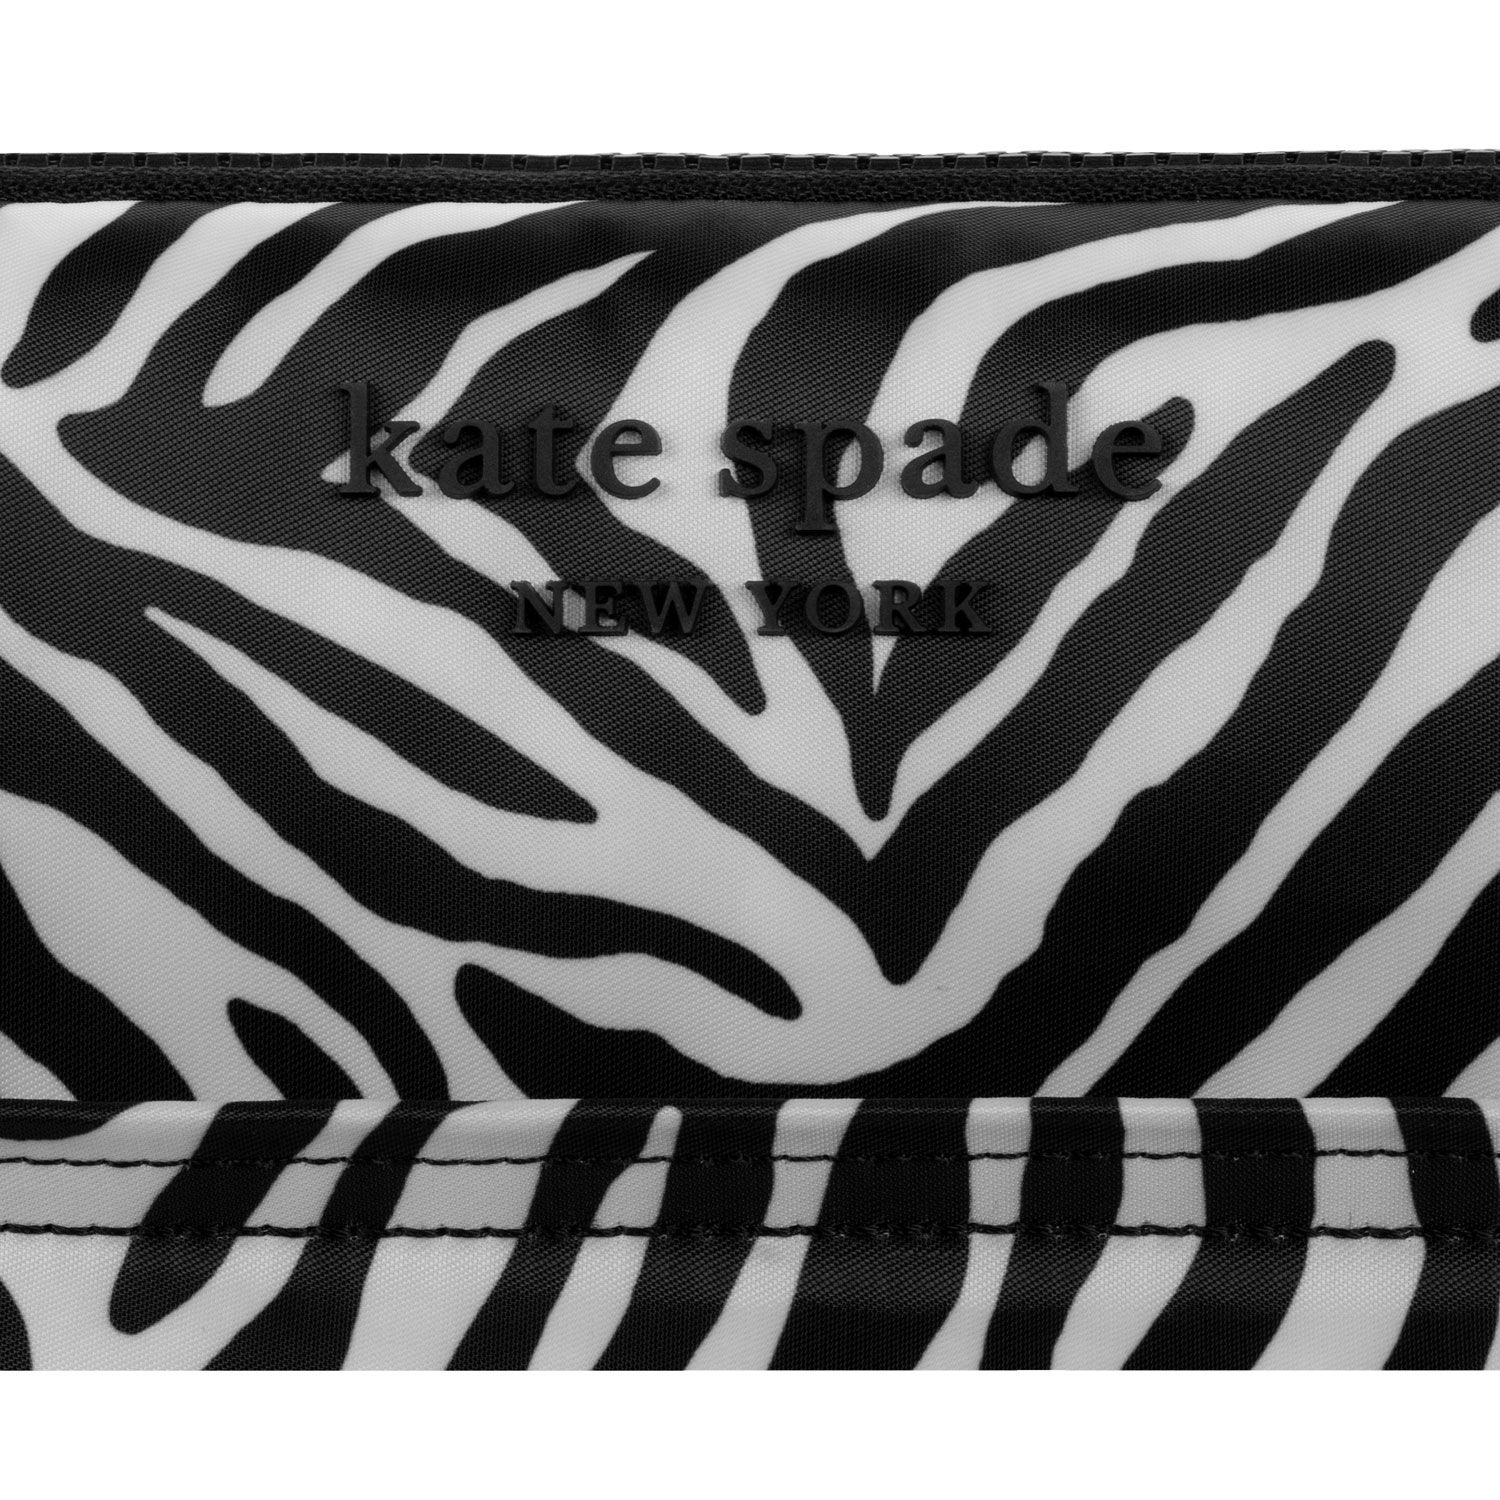 ซองใส่แล็ปท็อป Kate Spade New York รุ่น Puffer Sleeve - 16" Laptop - ลาย Zebra